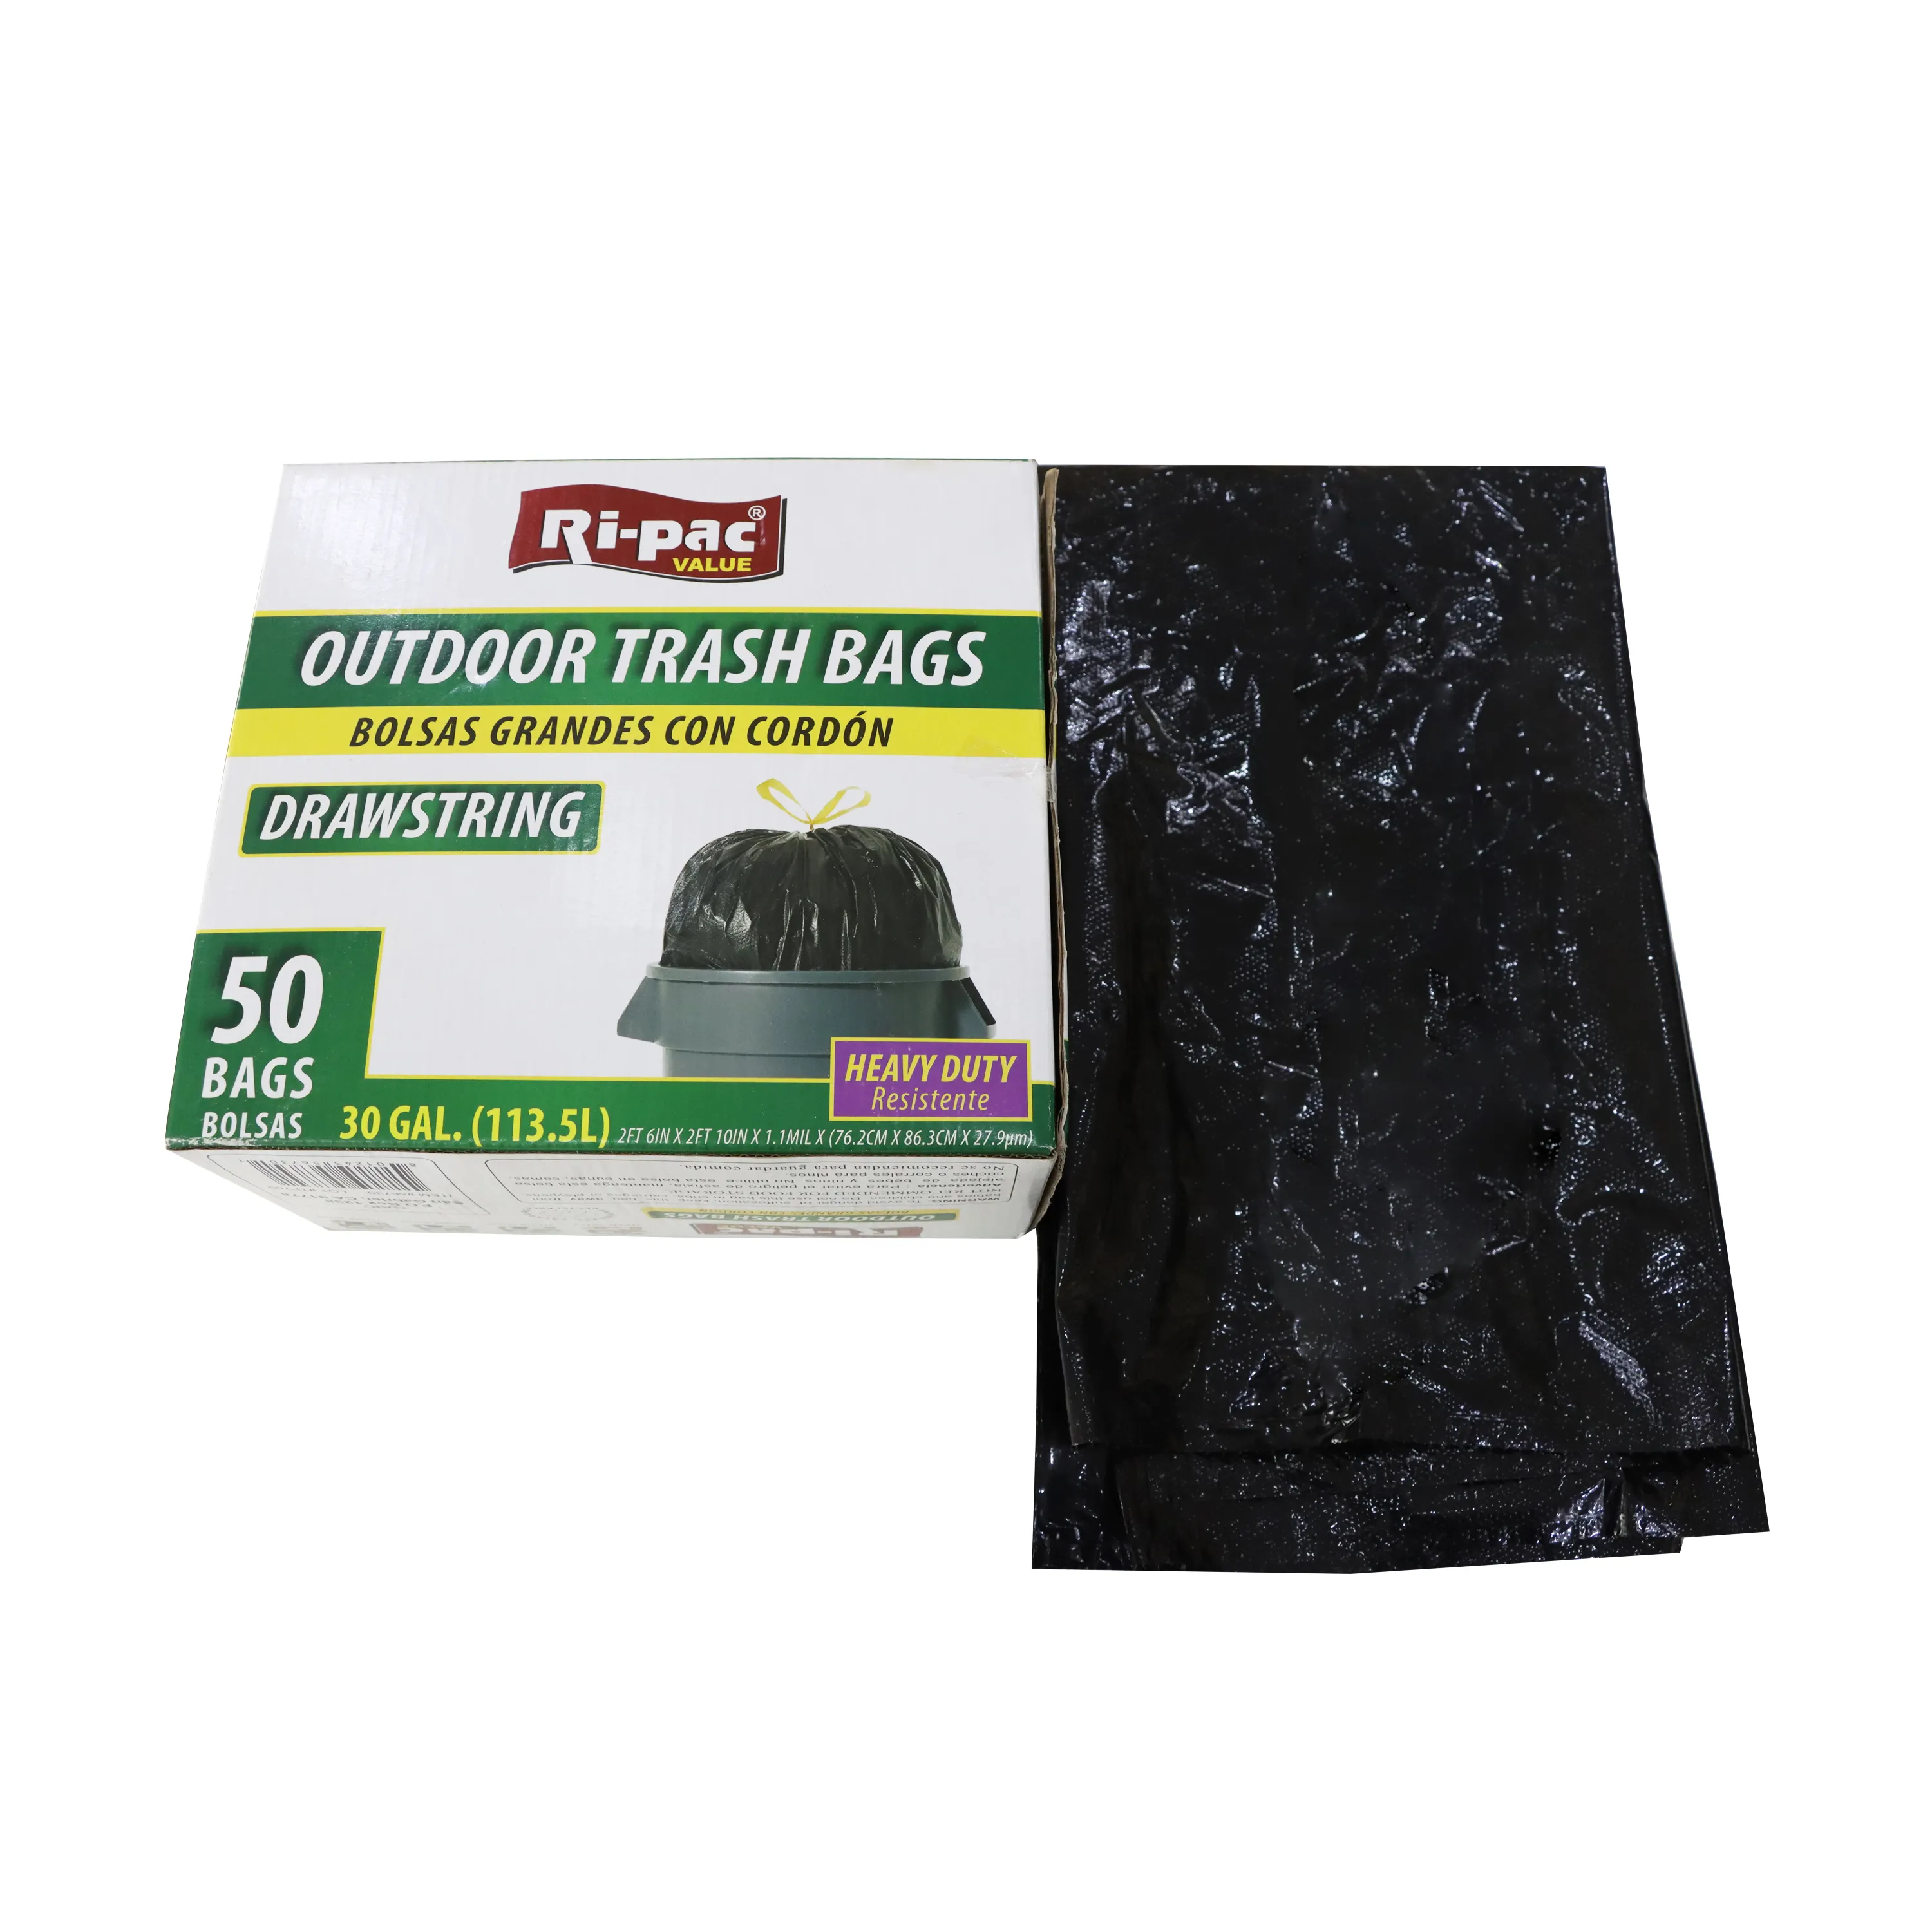 Cuerda fuerte y bolsa de basura de cuerda de plástico resistente Bolsas de basura con cordón biodegradable y compostable